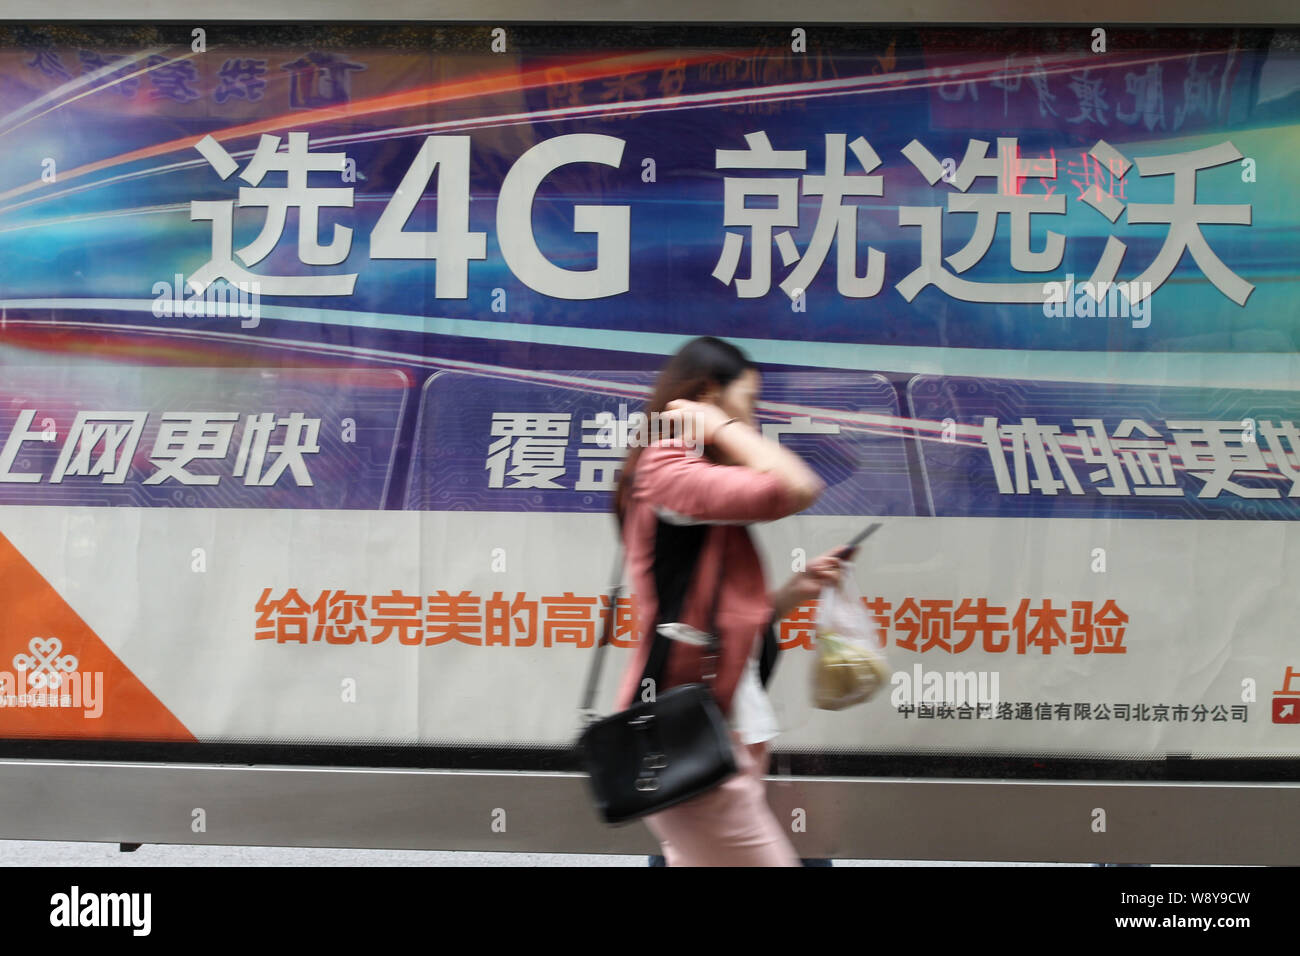 --FILE--un piéton passe devant une publicité pour les réseaux 4G LTE de China Unicom à Beijing, Chine, 10 mai 2014. China Telecom Corp et la Chine Banque D'Images